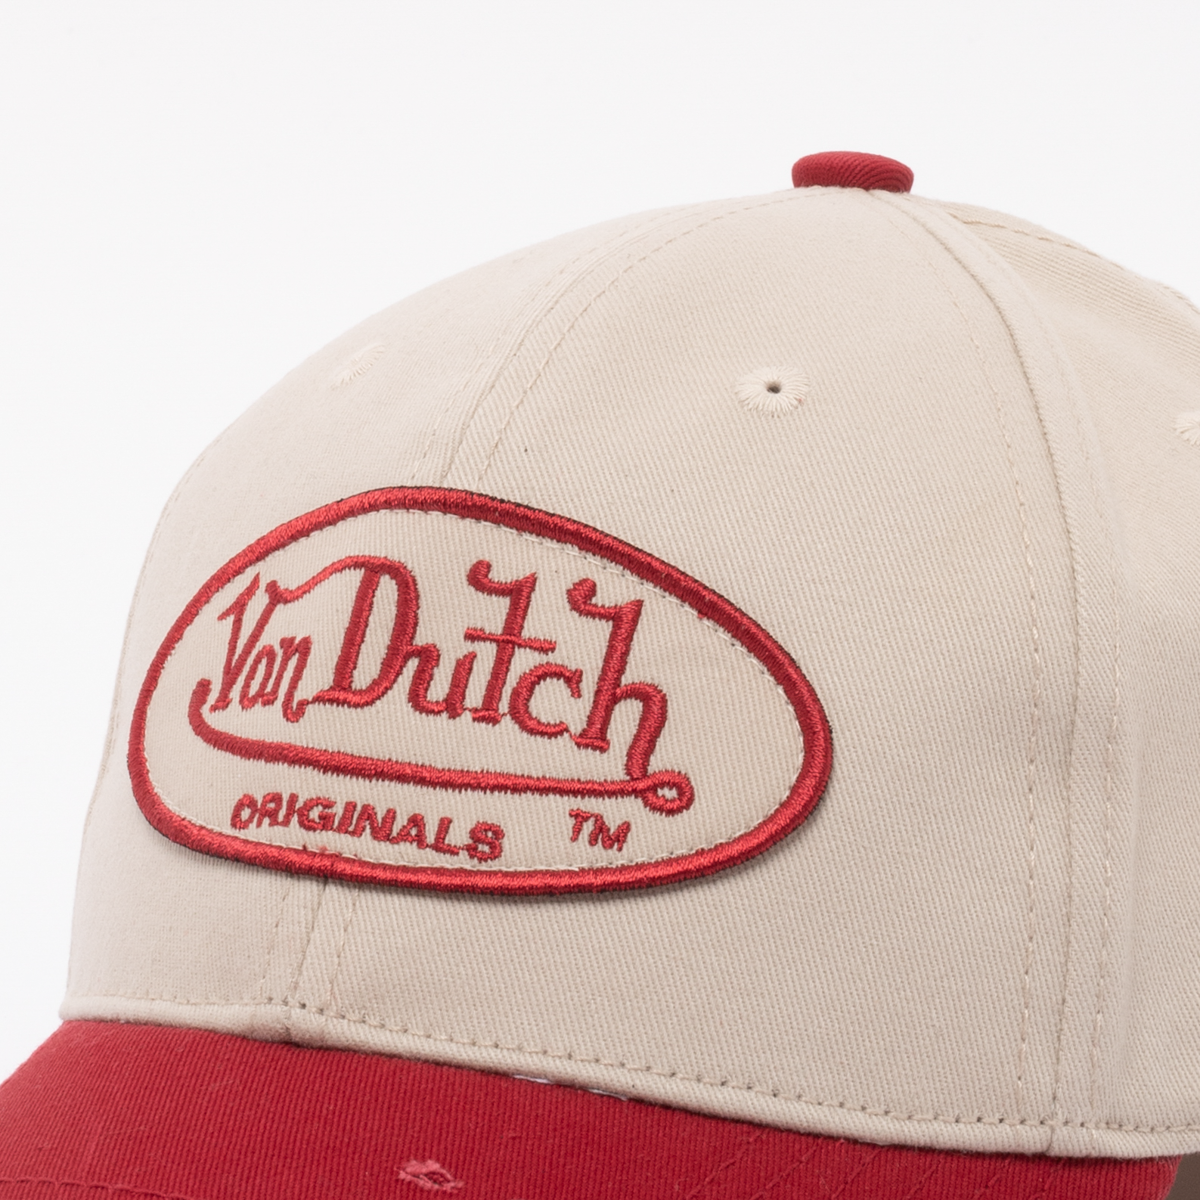 Von Dutch - DB Denver Dad Cap - Khaki/Red - Headz Up 